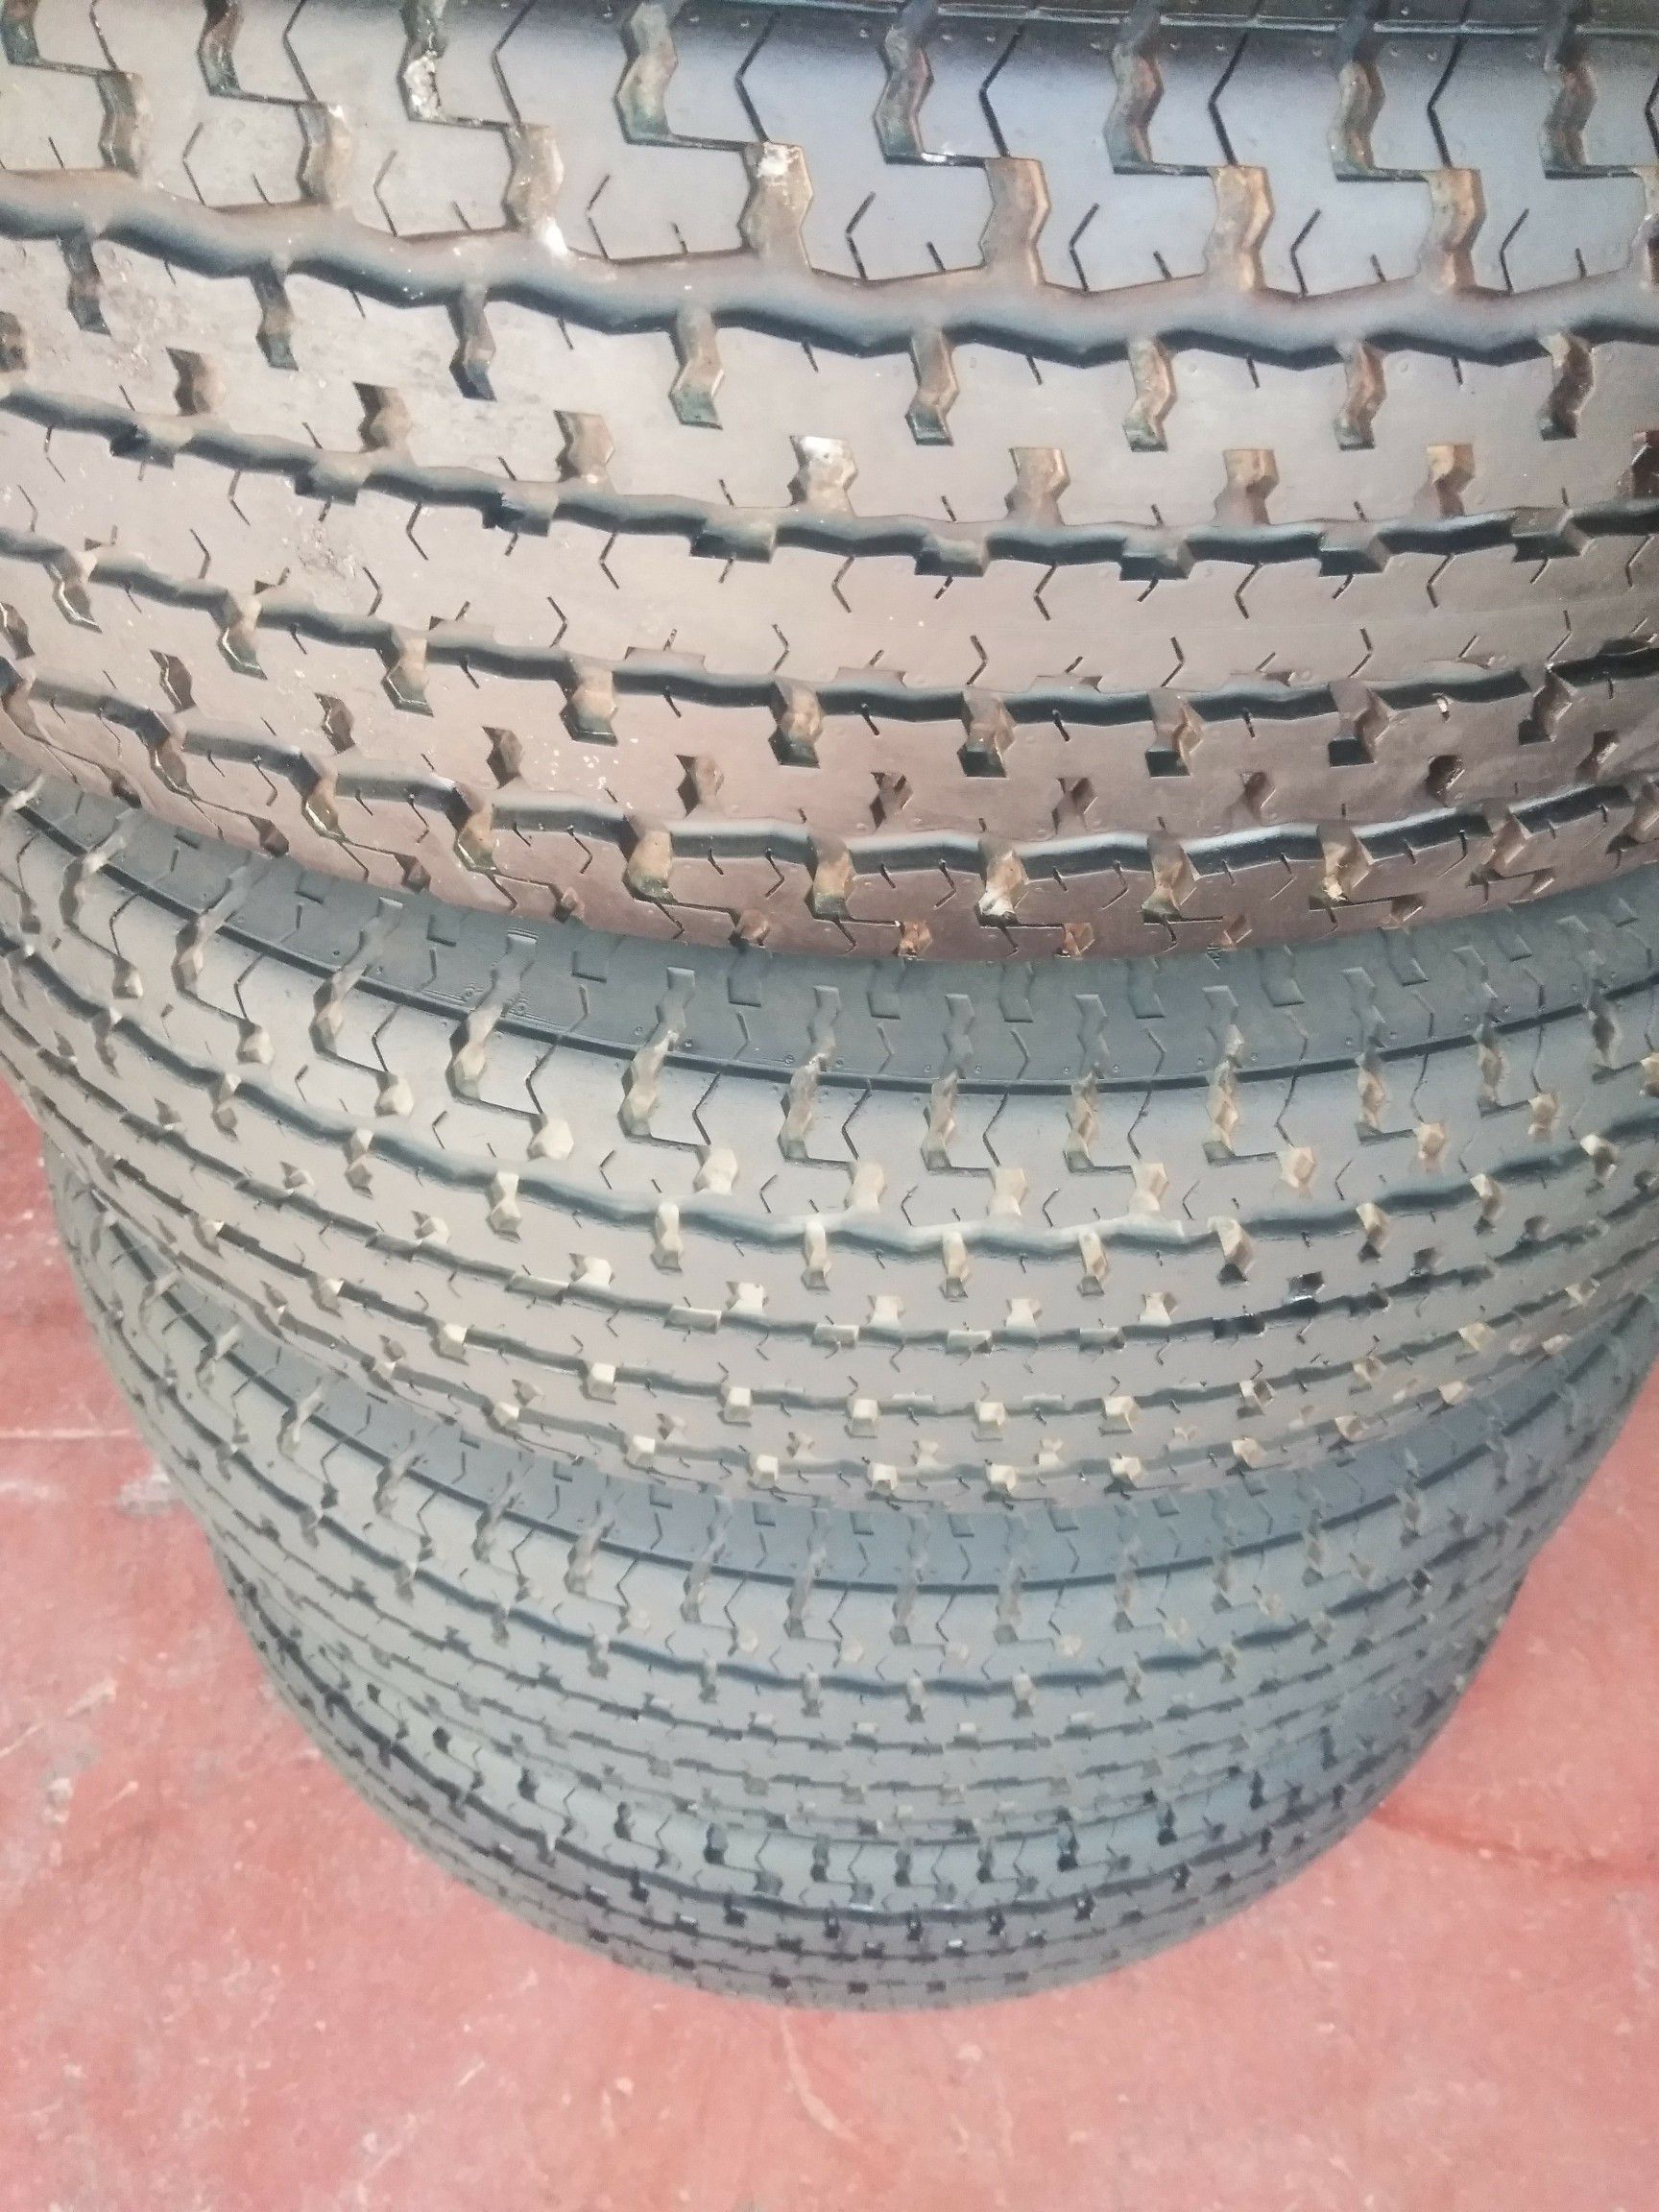 Set 4 Tires used ST235 80 R16. 80% tread good